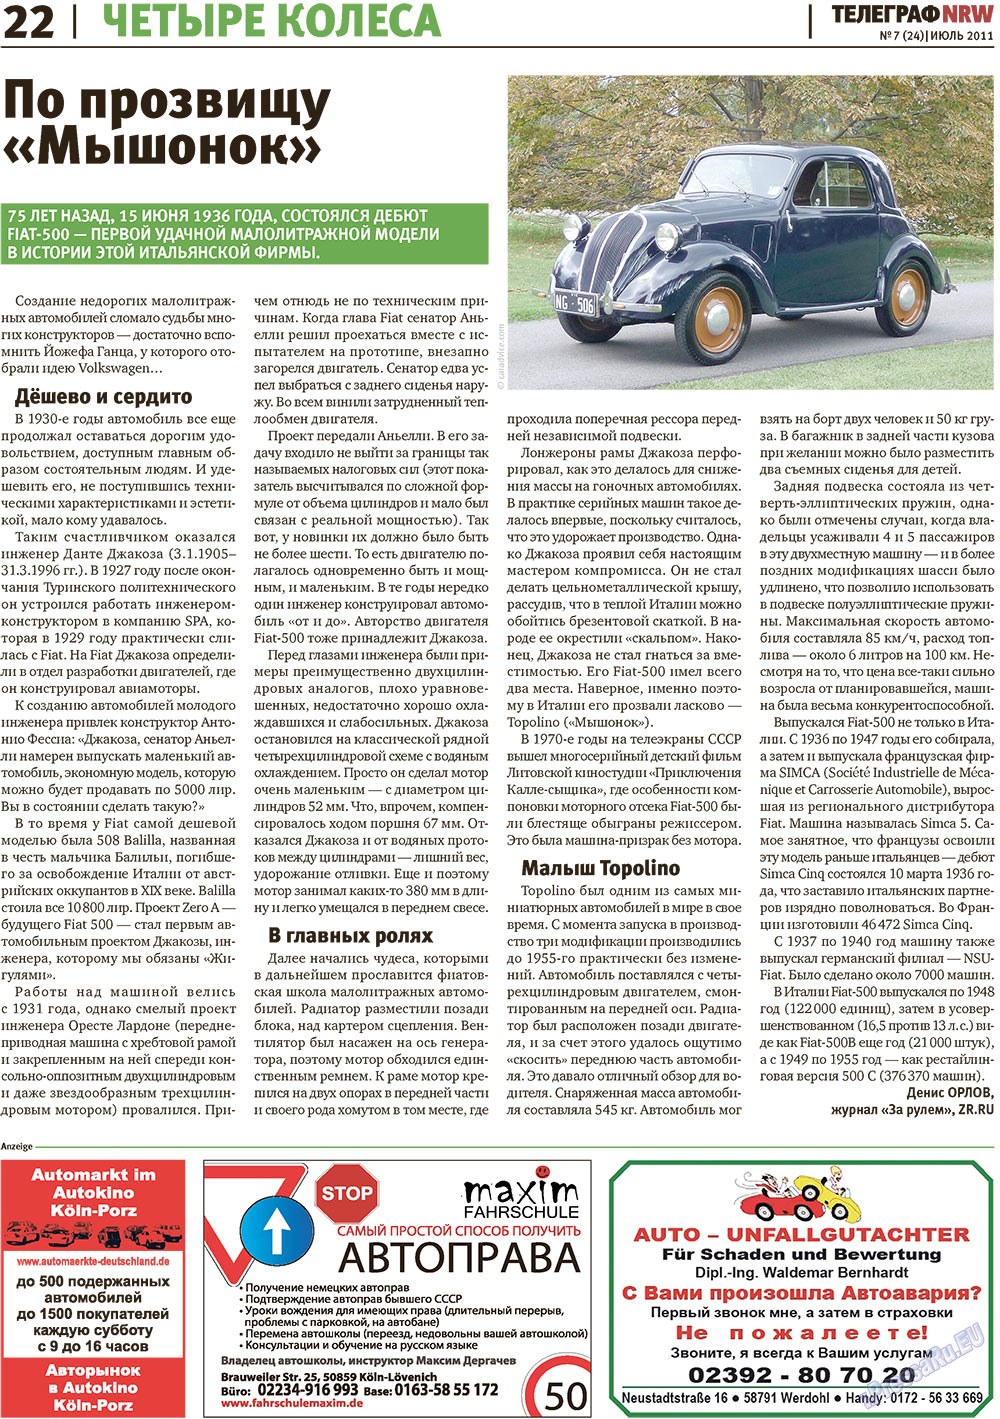 Telegraf NRW (Zeitung). 2011 Jahr, Ausgabe 7, Seite 22